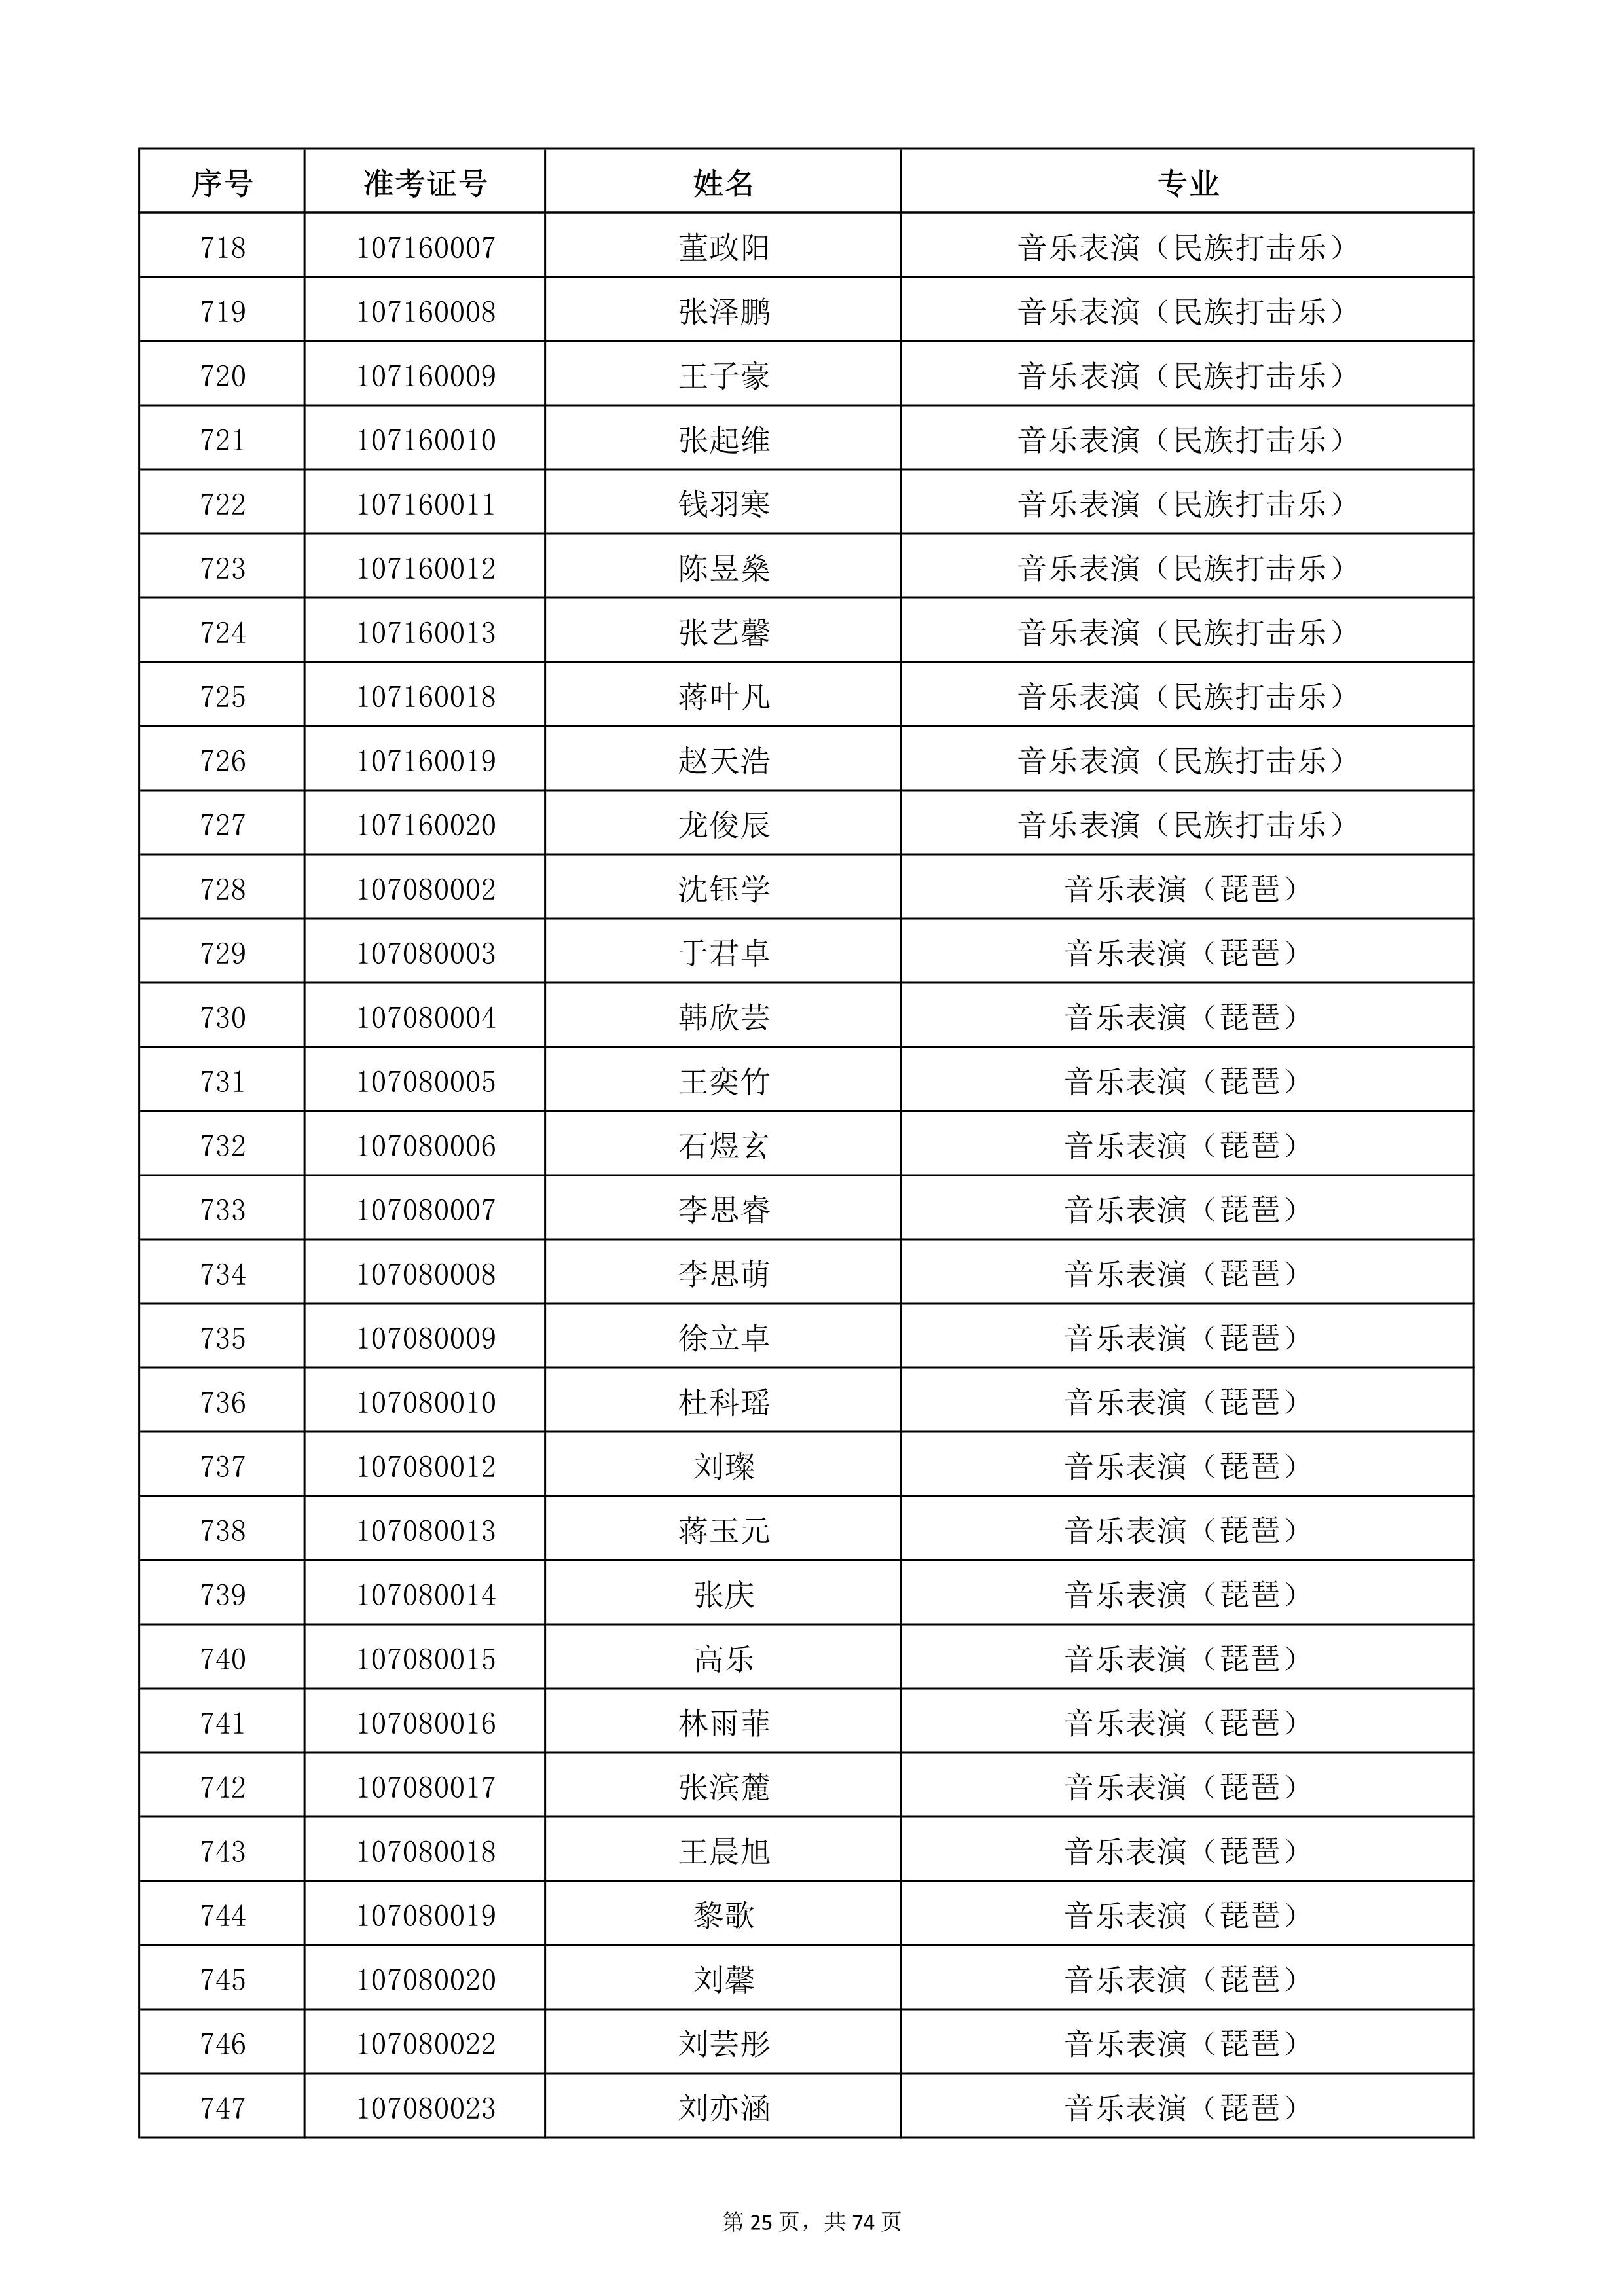 天津音乐学院2022年本科招生考试复试名单_25.jpg